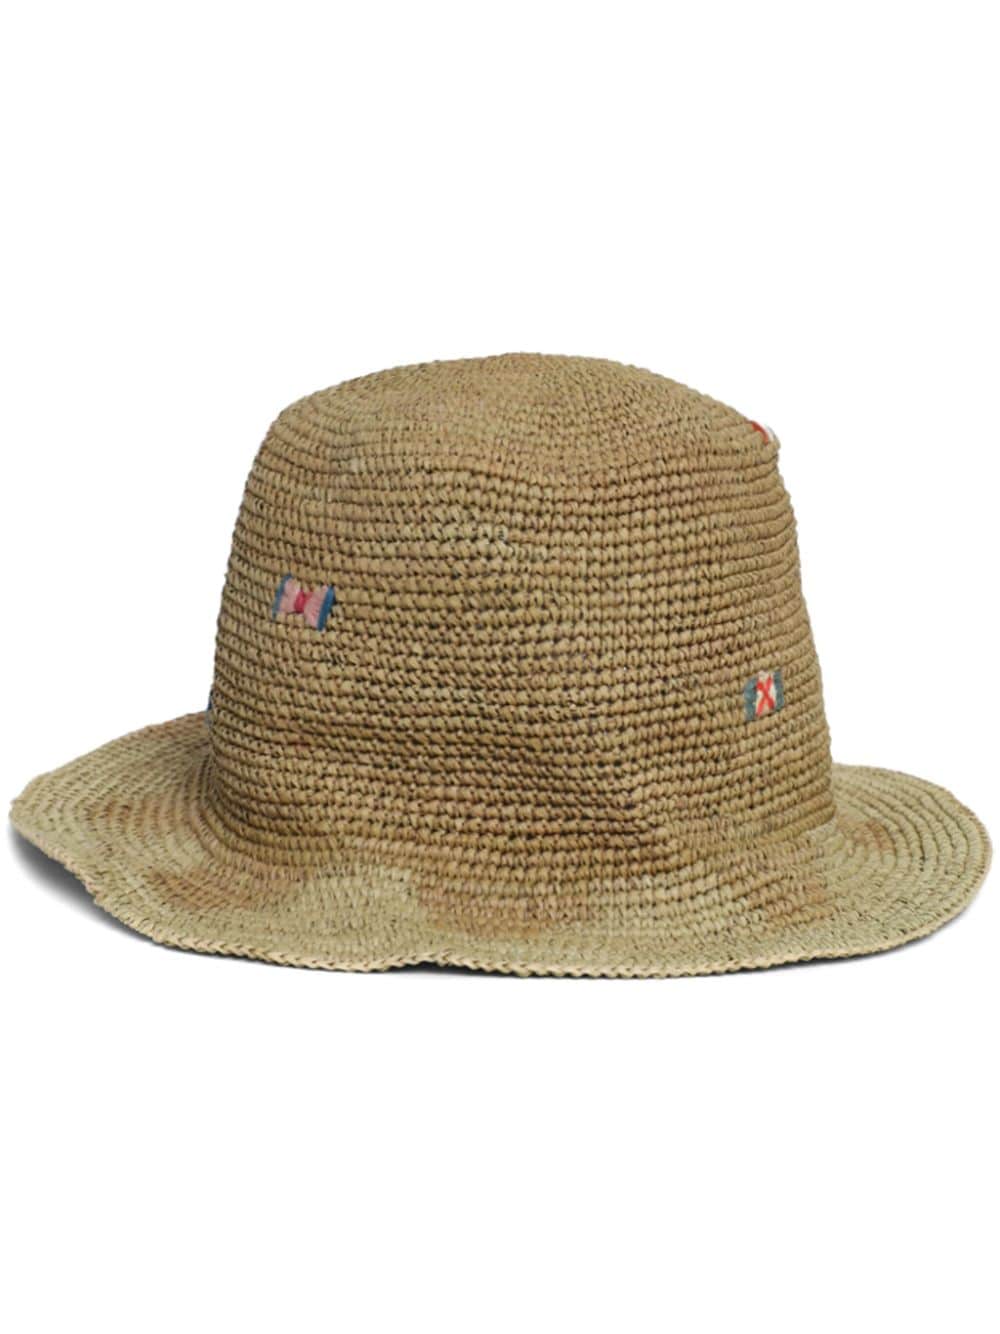 Nick Fouquet Vegabond Straw Sun Hat In Neutrals